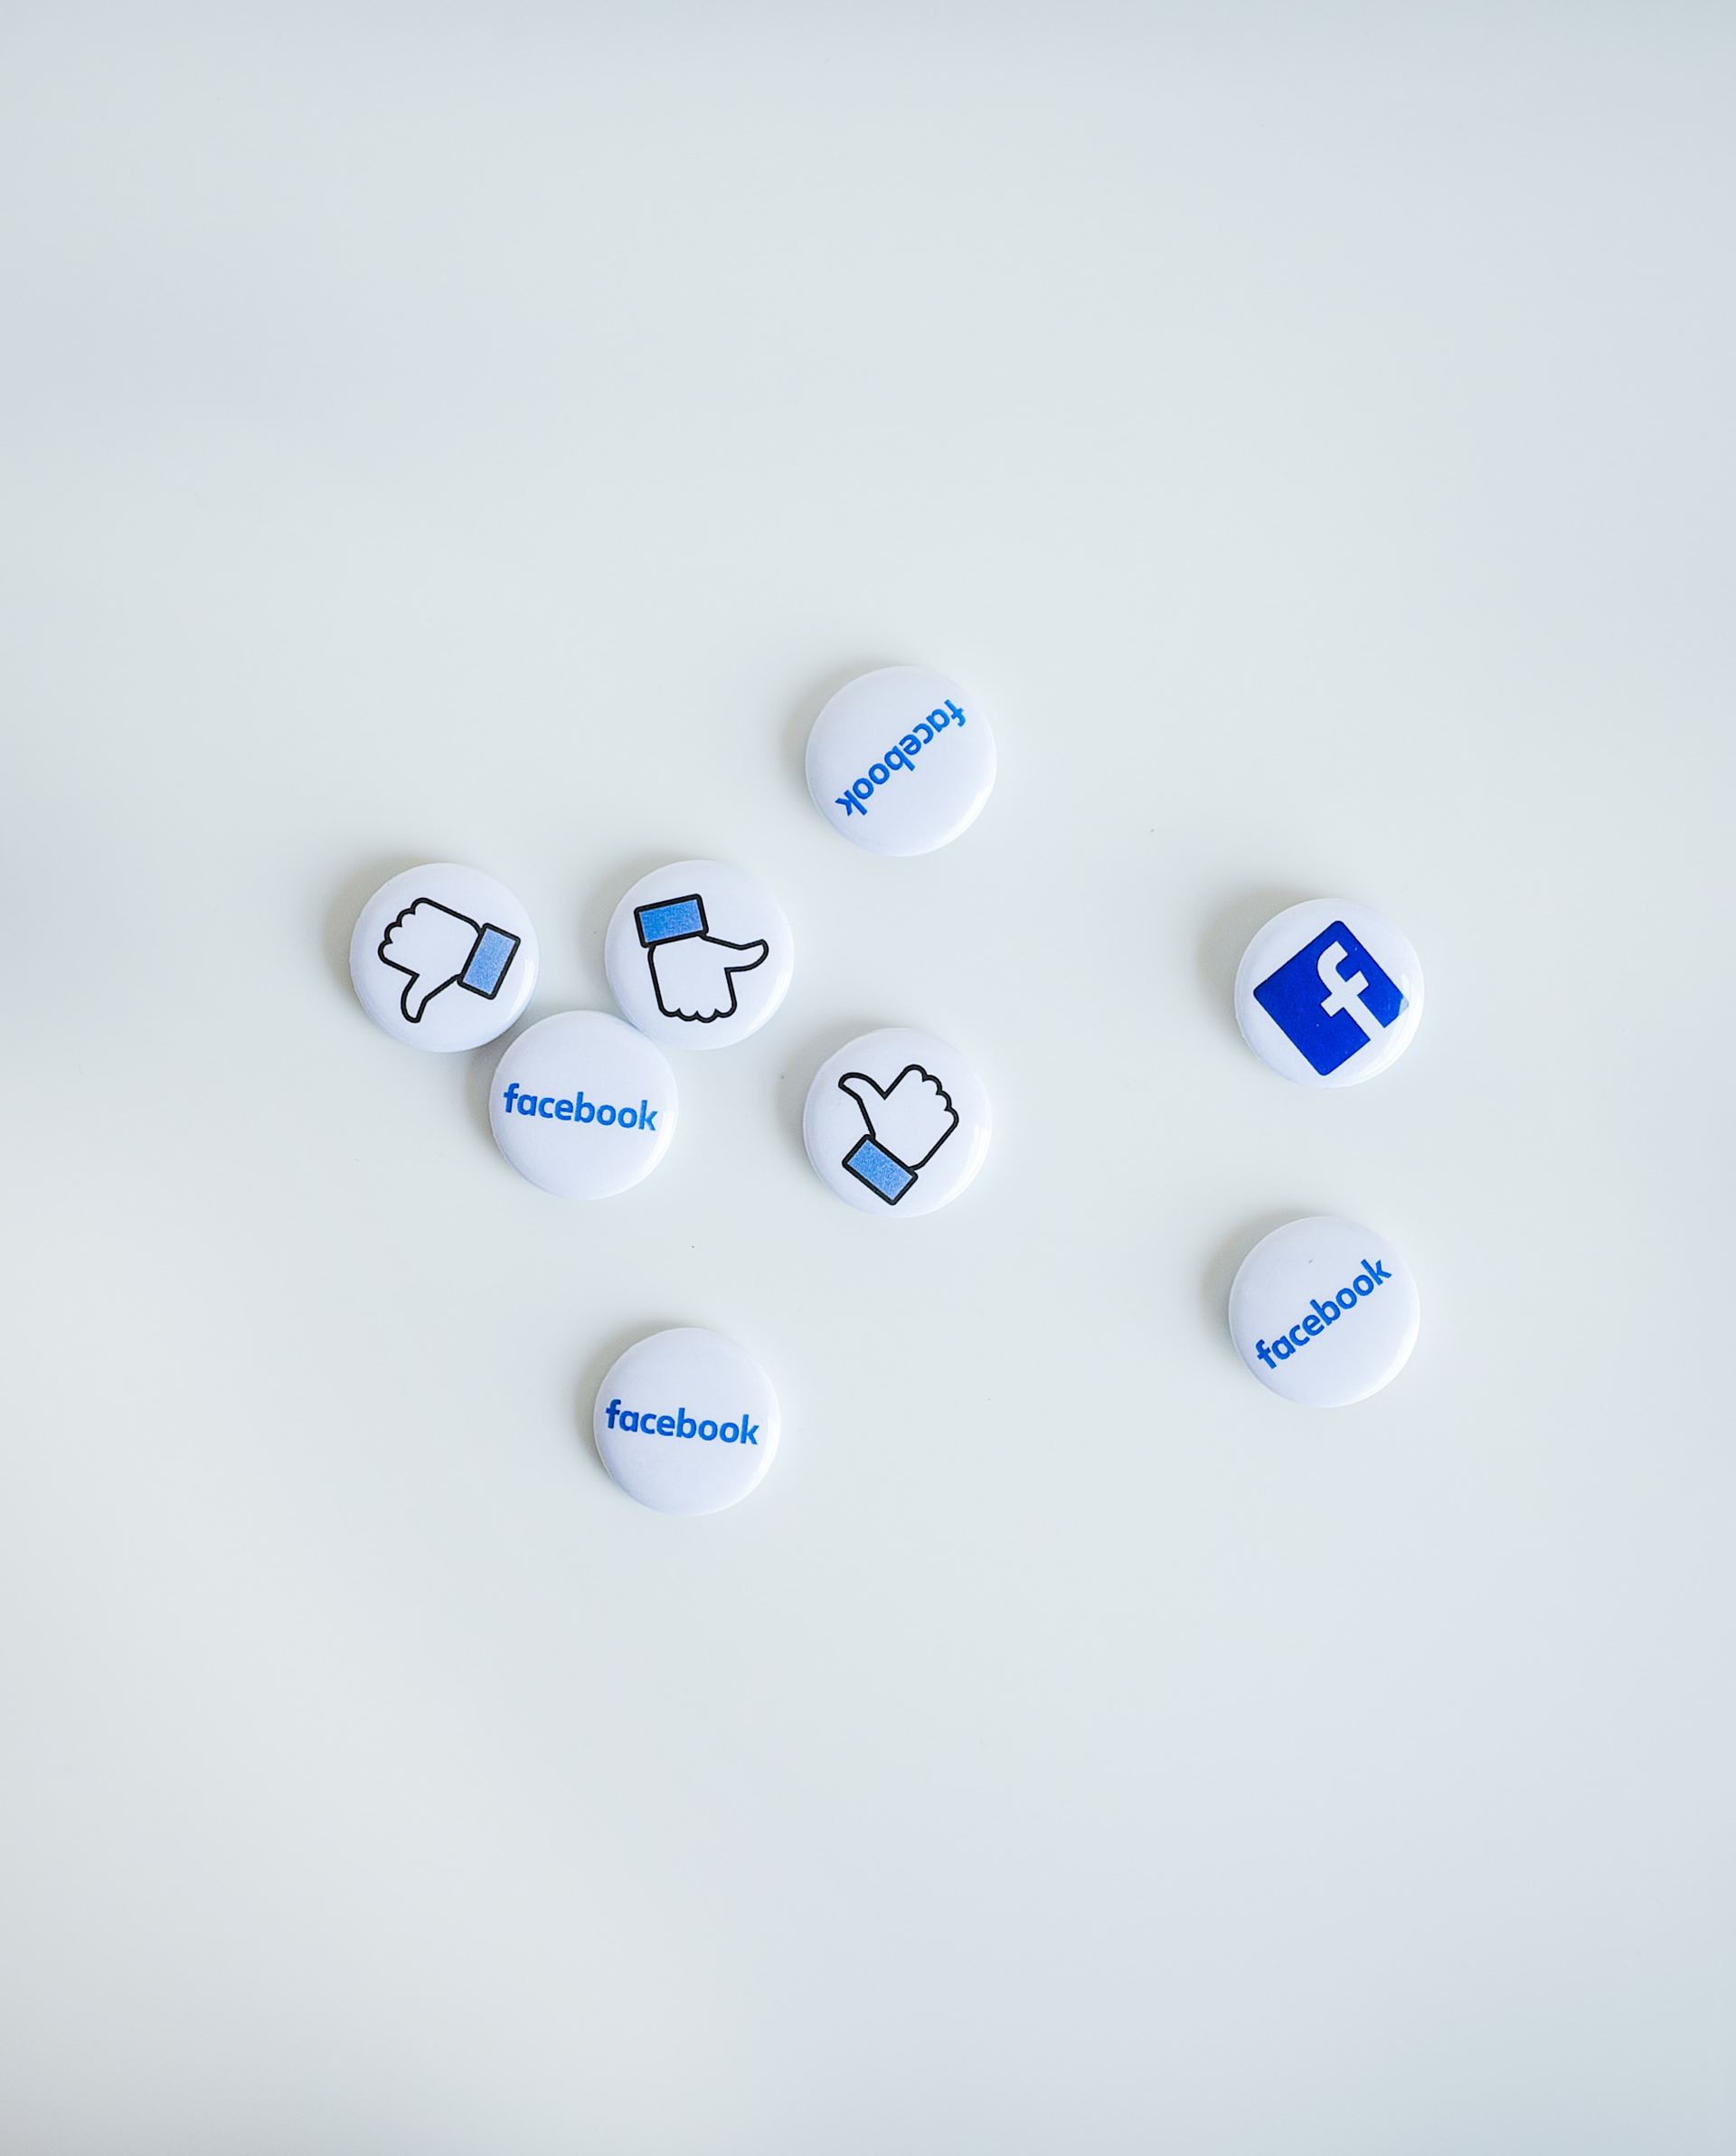 Facebook buttons